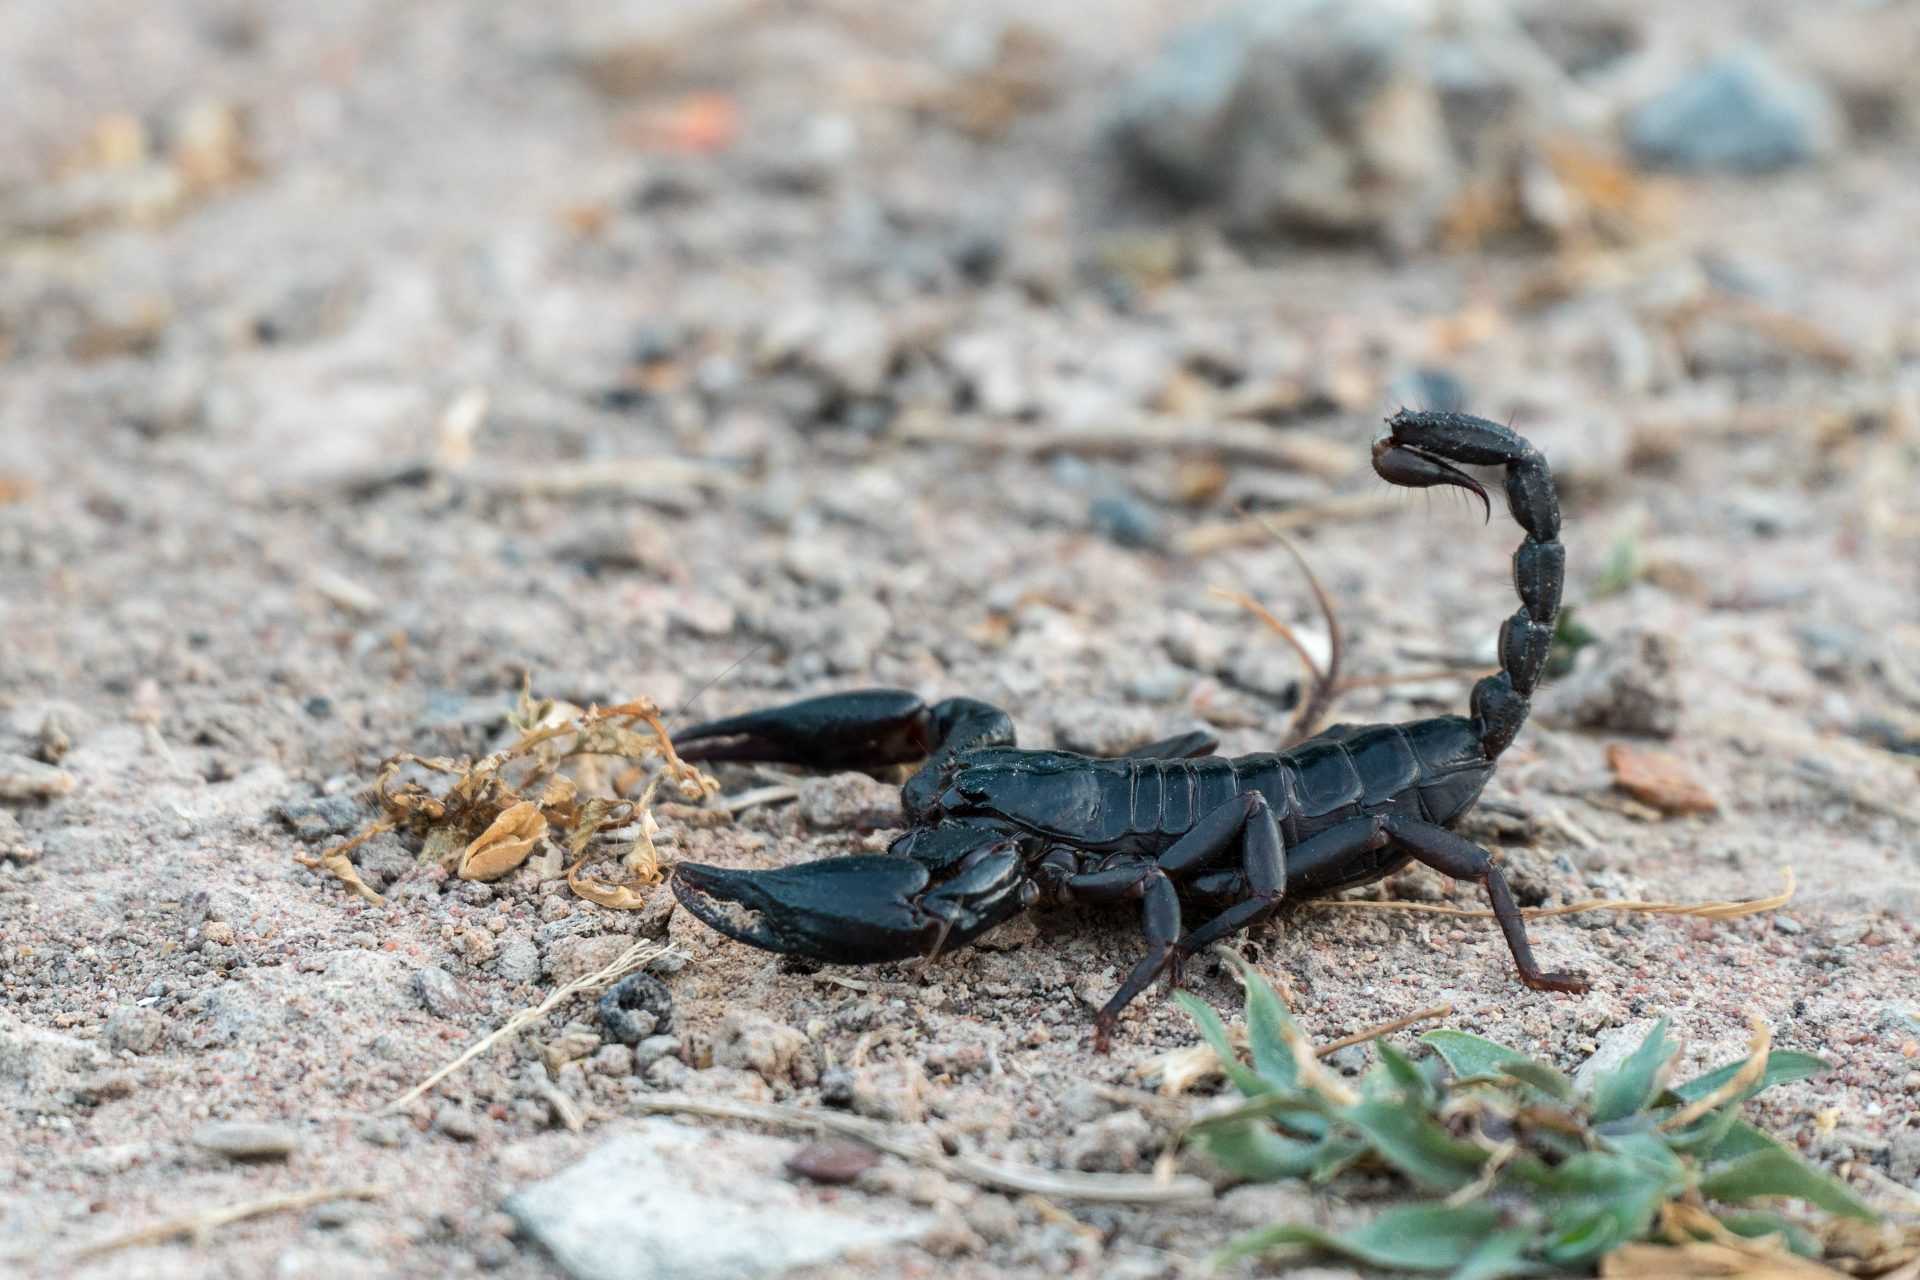 6. Scorpions 